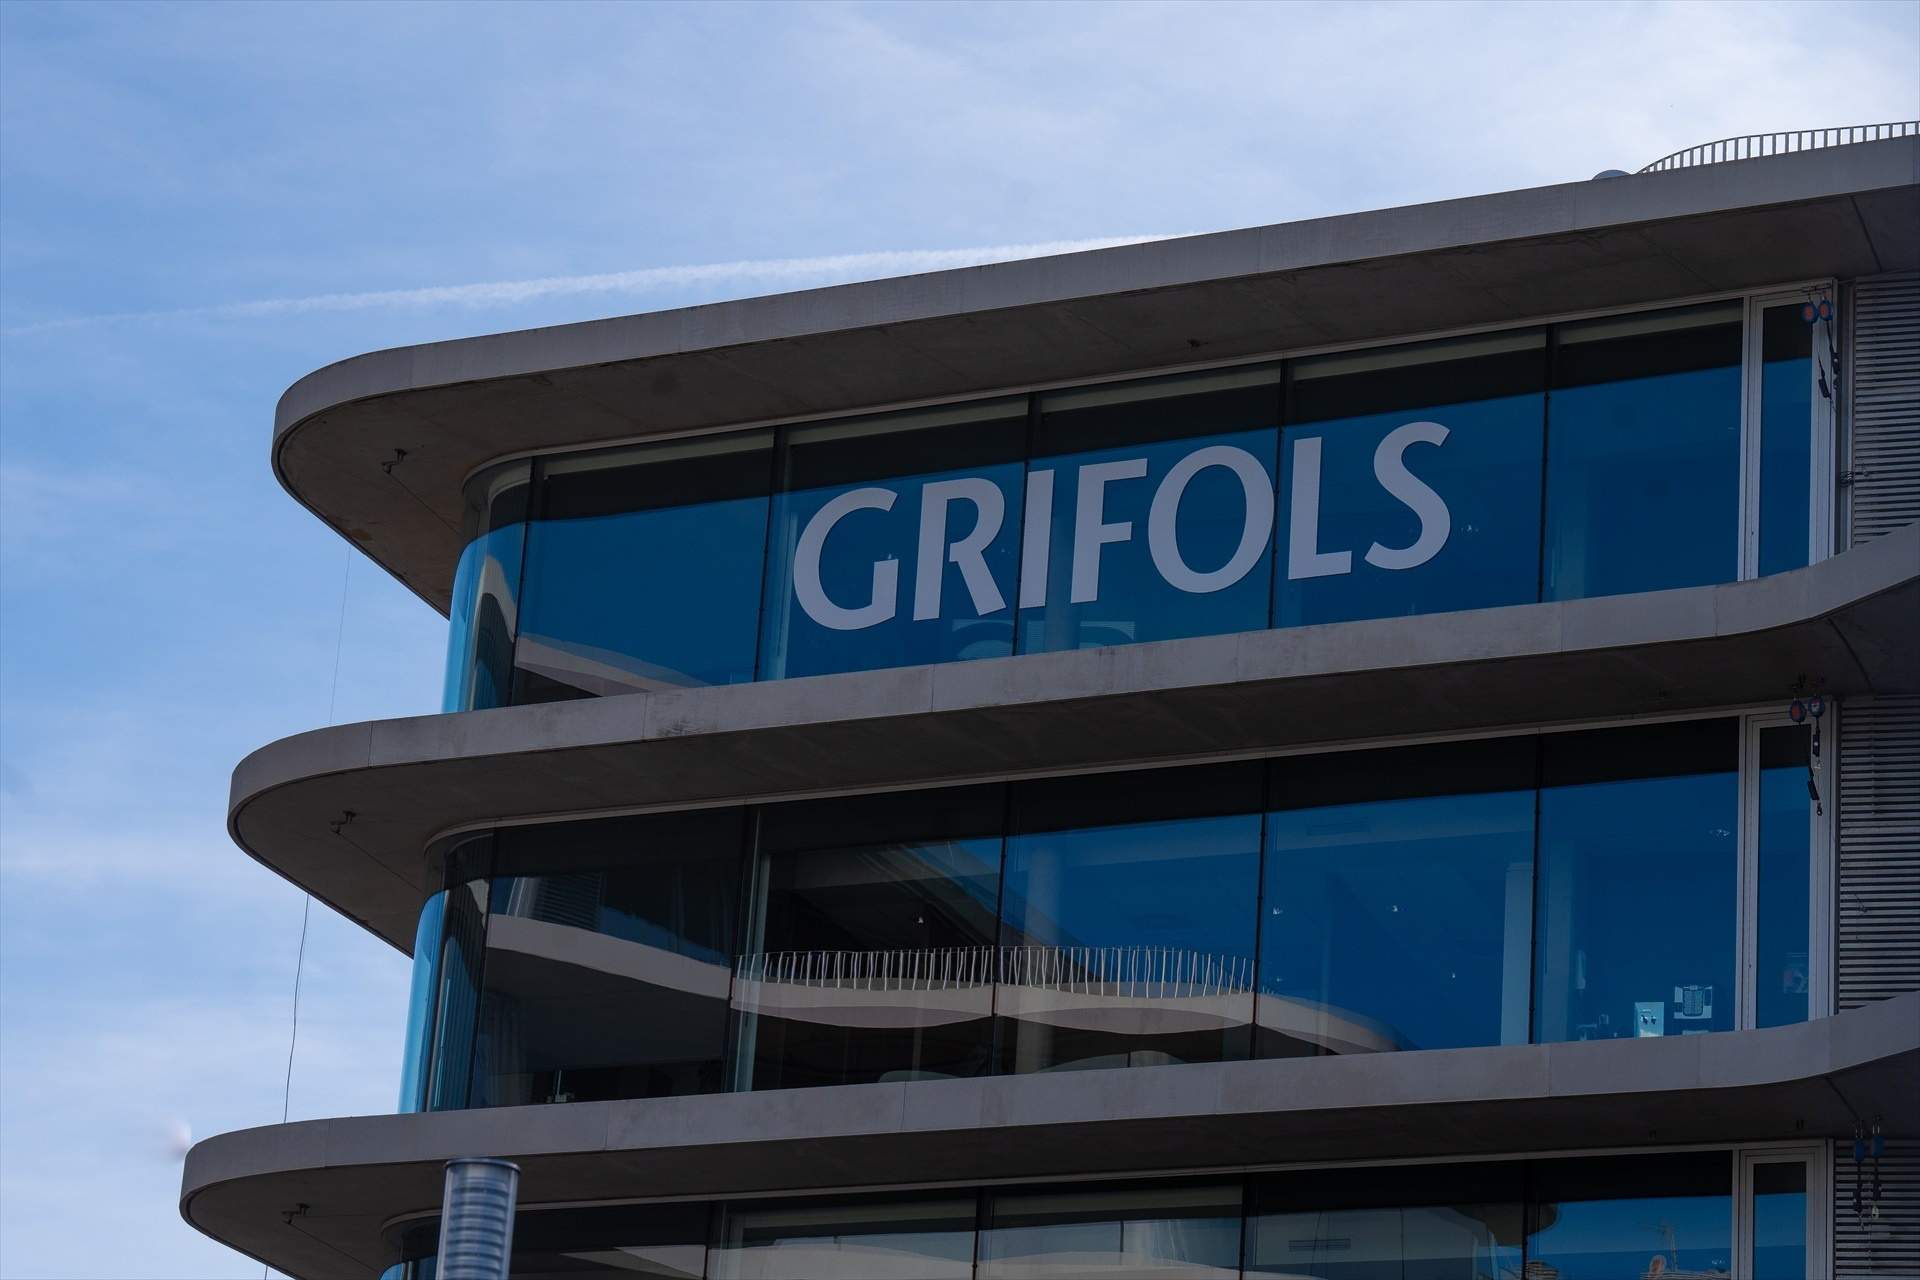 Grifols insisteix que tots els seus deutes estaven ja recollits en els comptes auditats